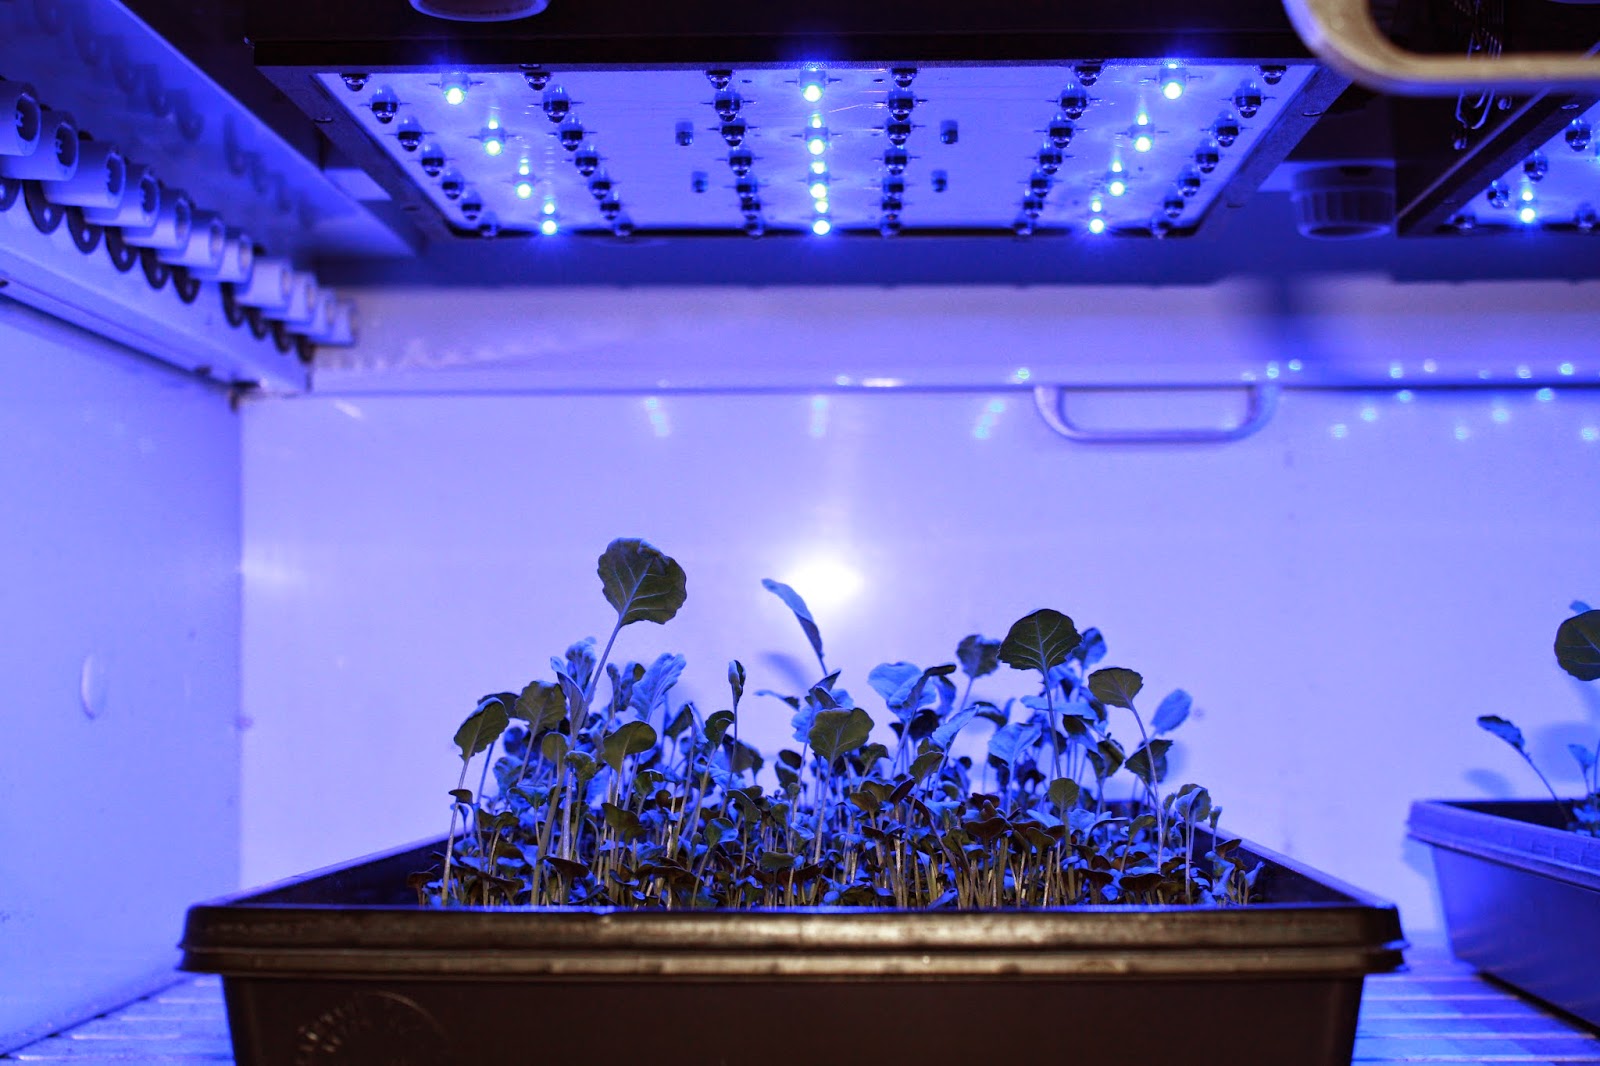 LEDs on lettuce: White light versus red + blue light - Produce Grower